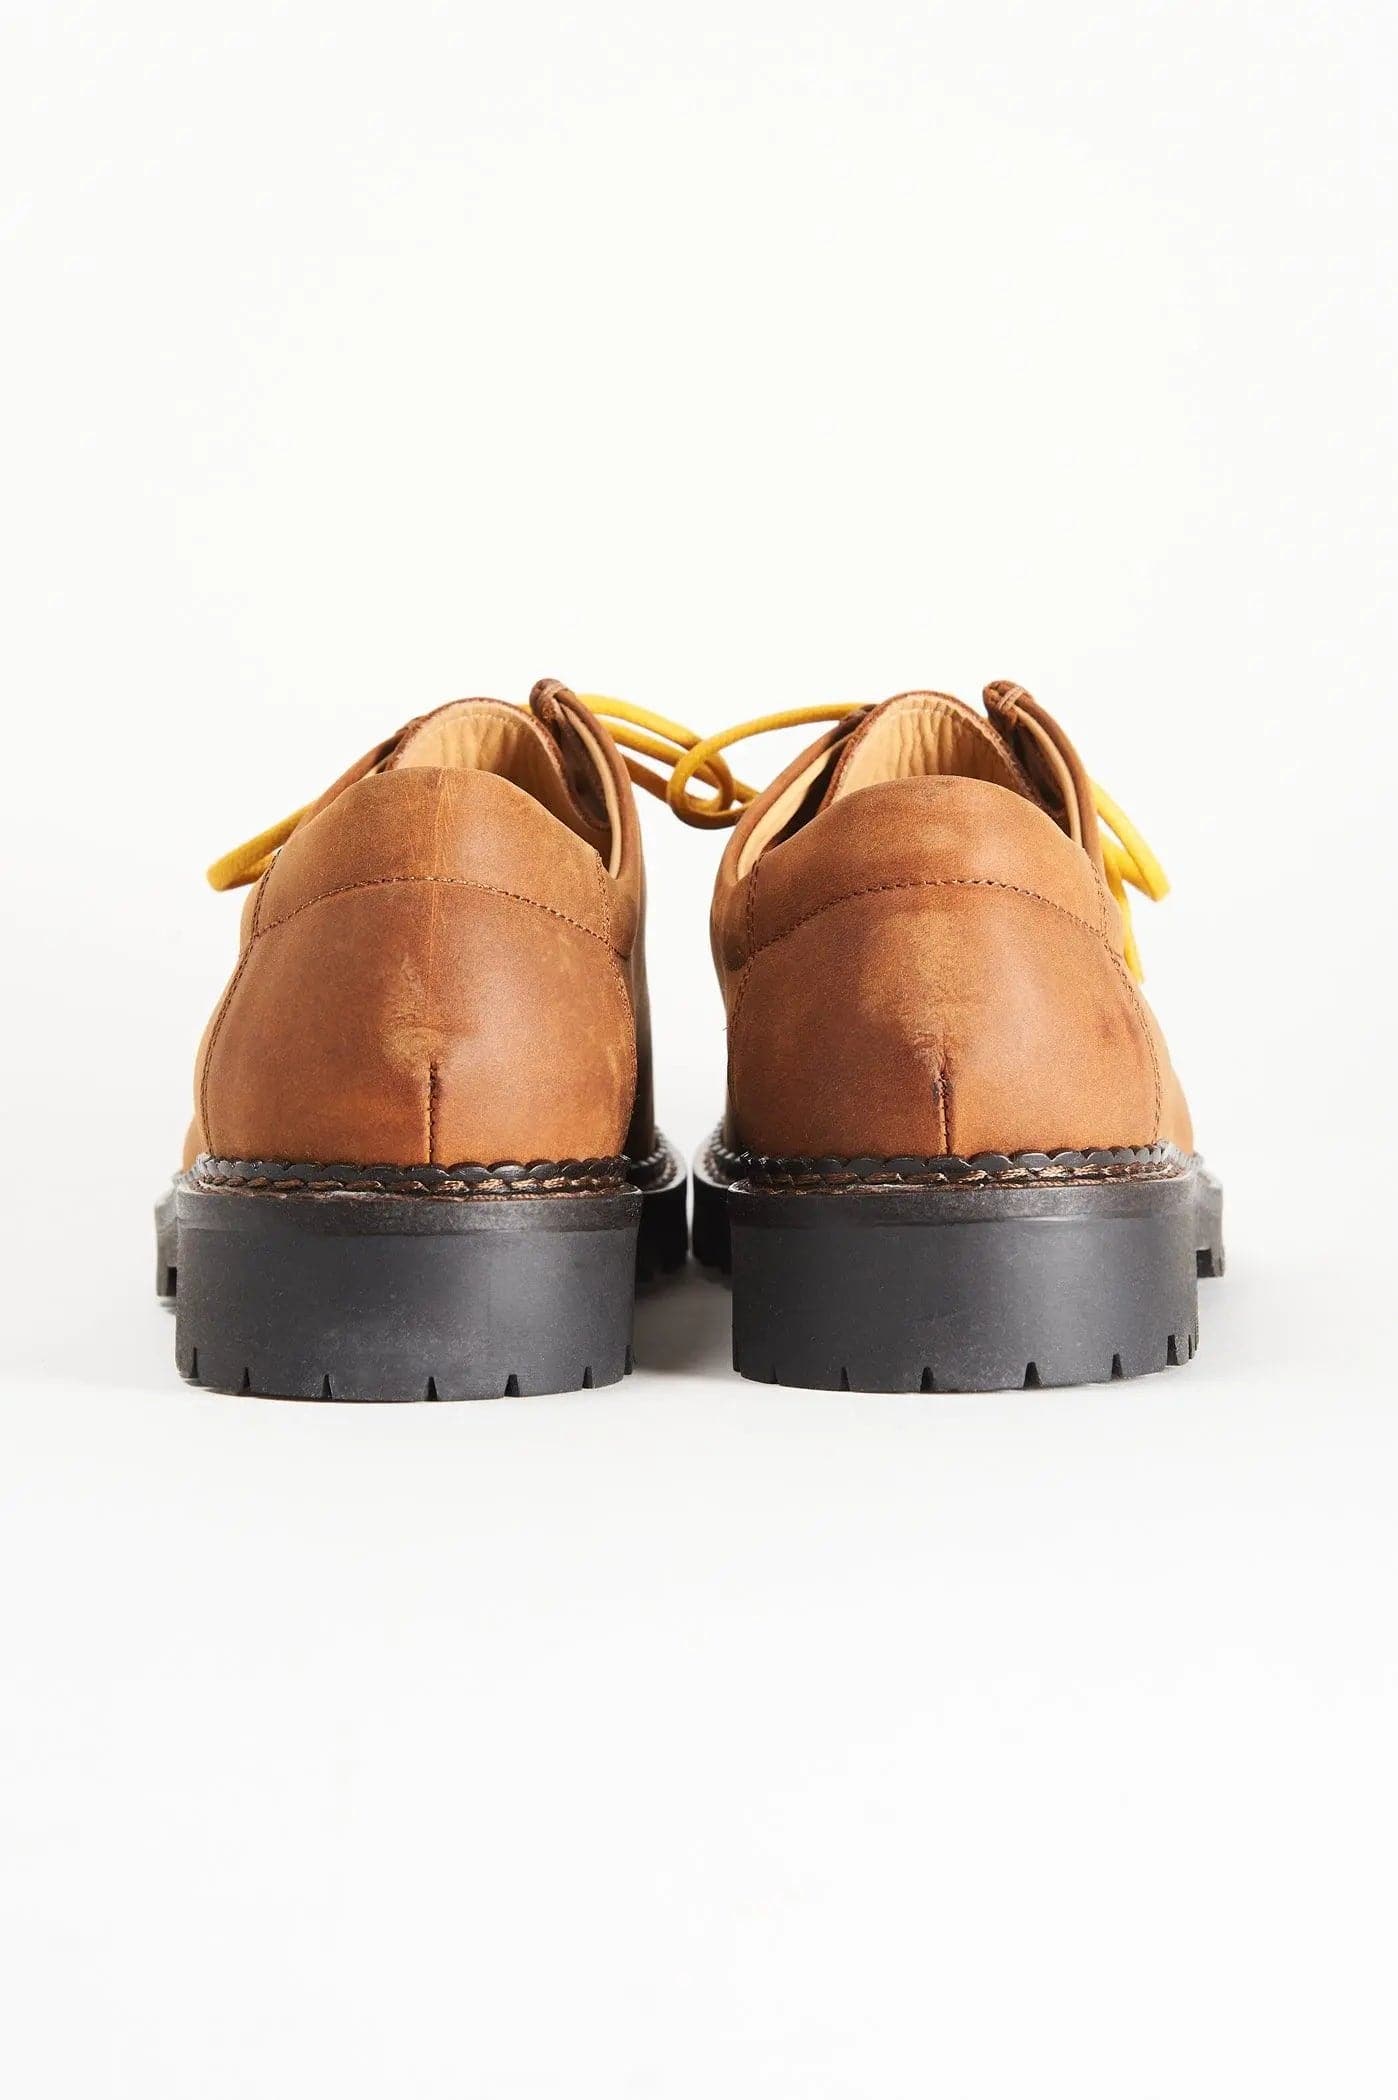 De Paz ShoesLe De Paz Shoes si prestano al tuo stile, seducendoti con il loro modello Boston! Una scarpa perfetta per un look da vero trend-setter: non rinunciare a un look modeDE PAZ